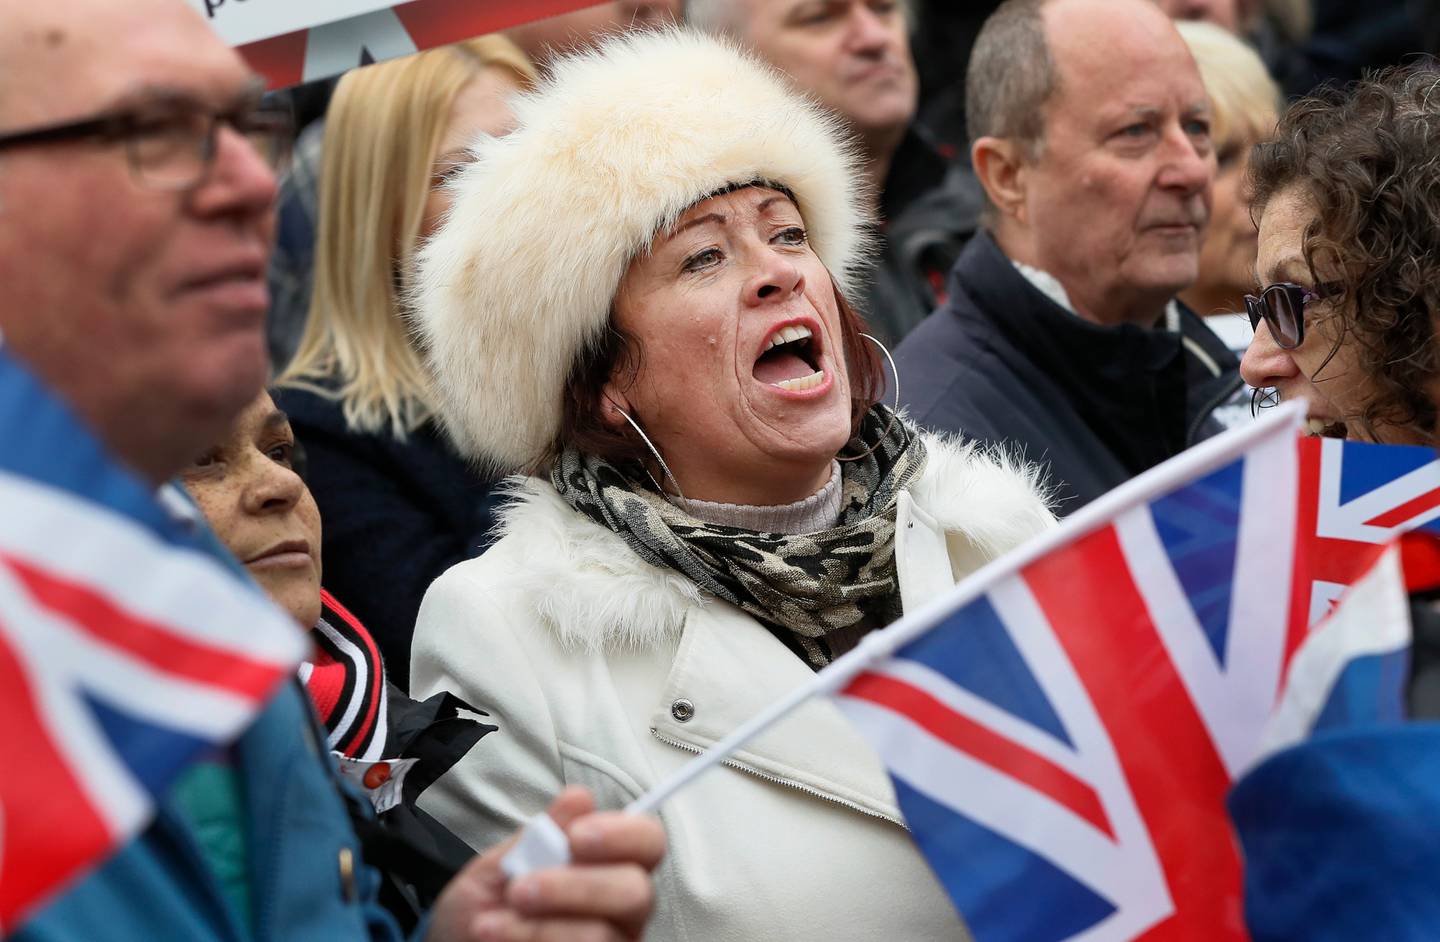 «Brexit»-tilhengere protesterer utenfor parlamentet i London. Hylland Eriksen mener at «Brexit» kan forklares som en følge av en avmaktsfølelse. Foto: Kirsty Wigglesworth/AP/NTB scanpix